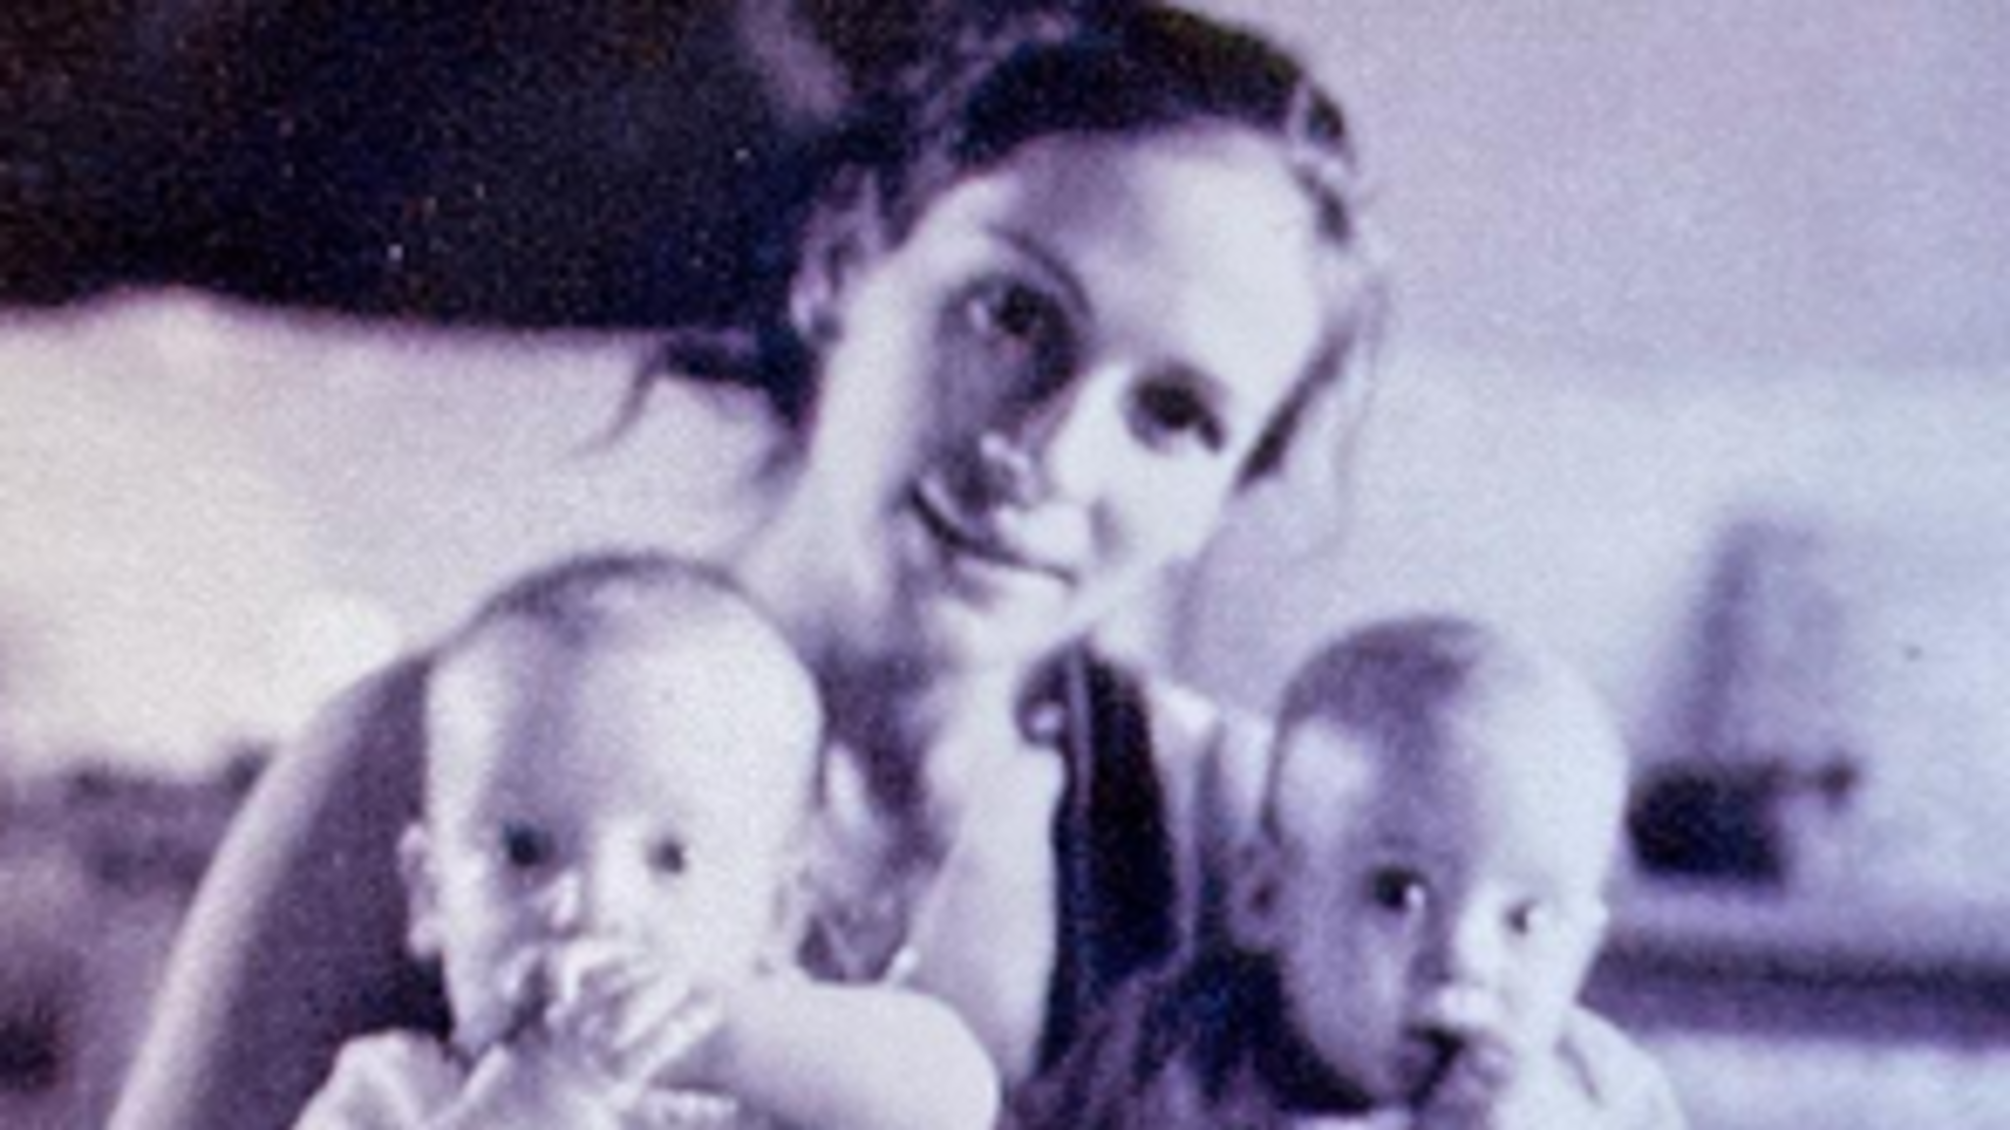 Джулія Робертс показала архівне фото з дітьми, зроблене 19 років тому 